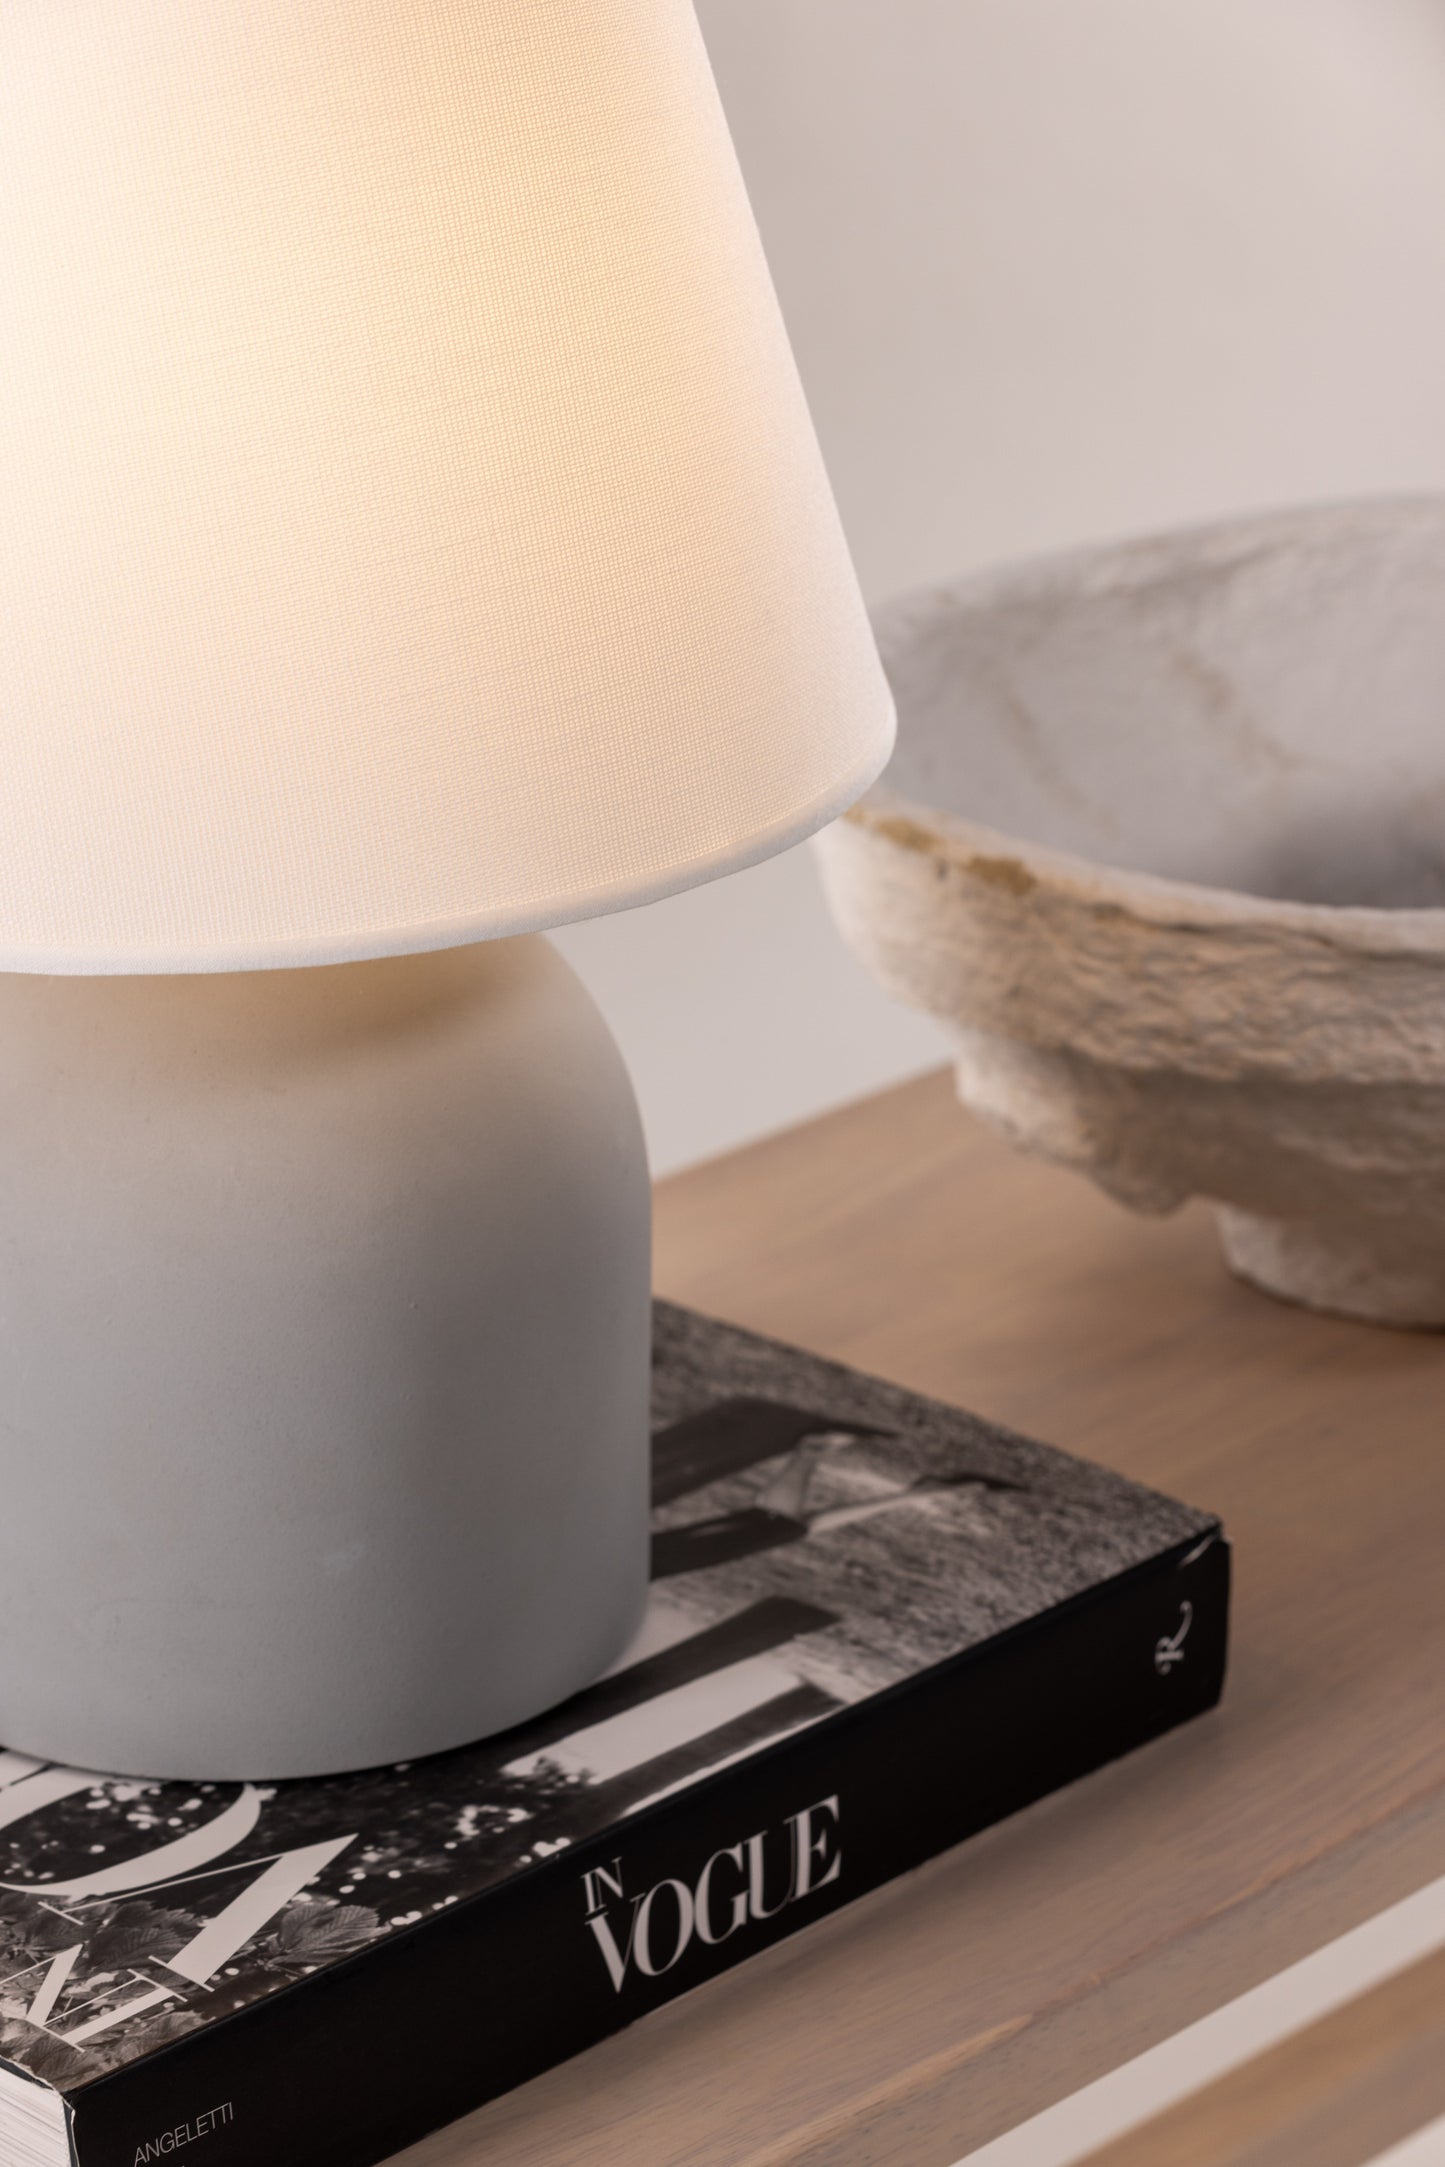 Styrsö Table Lamp - Concrete / Linen